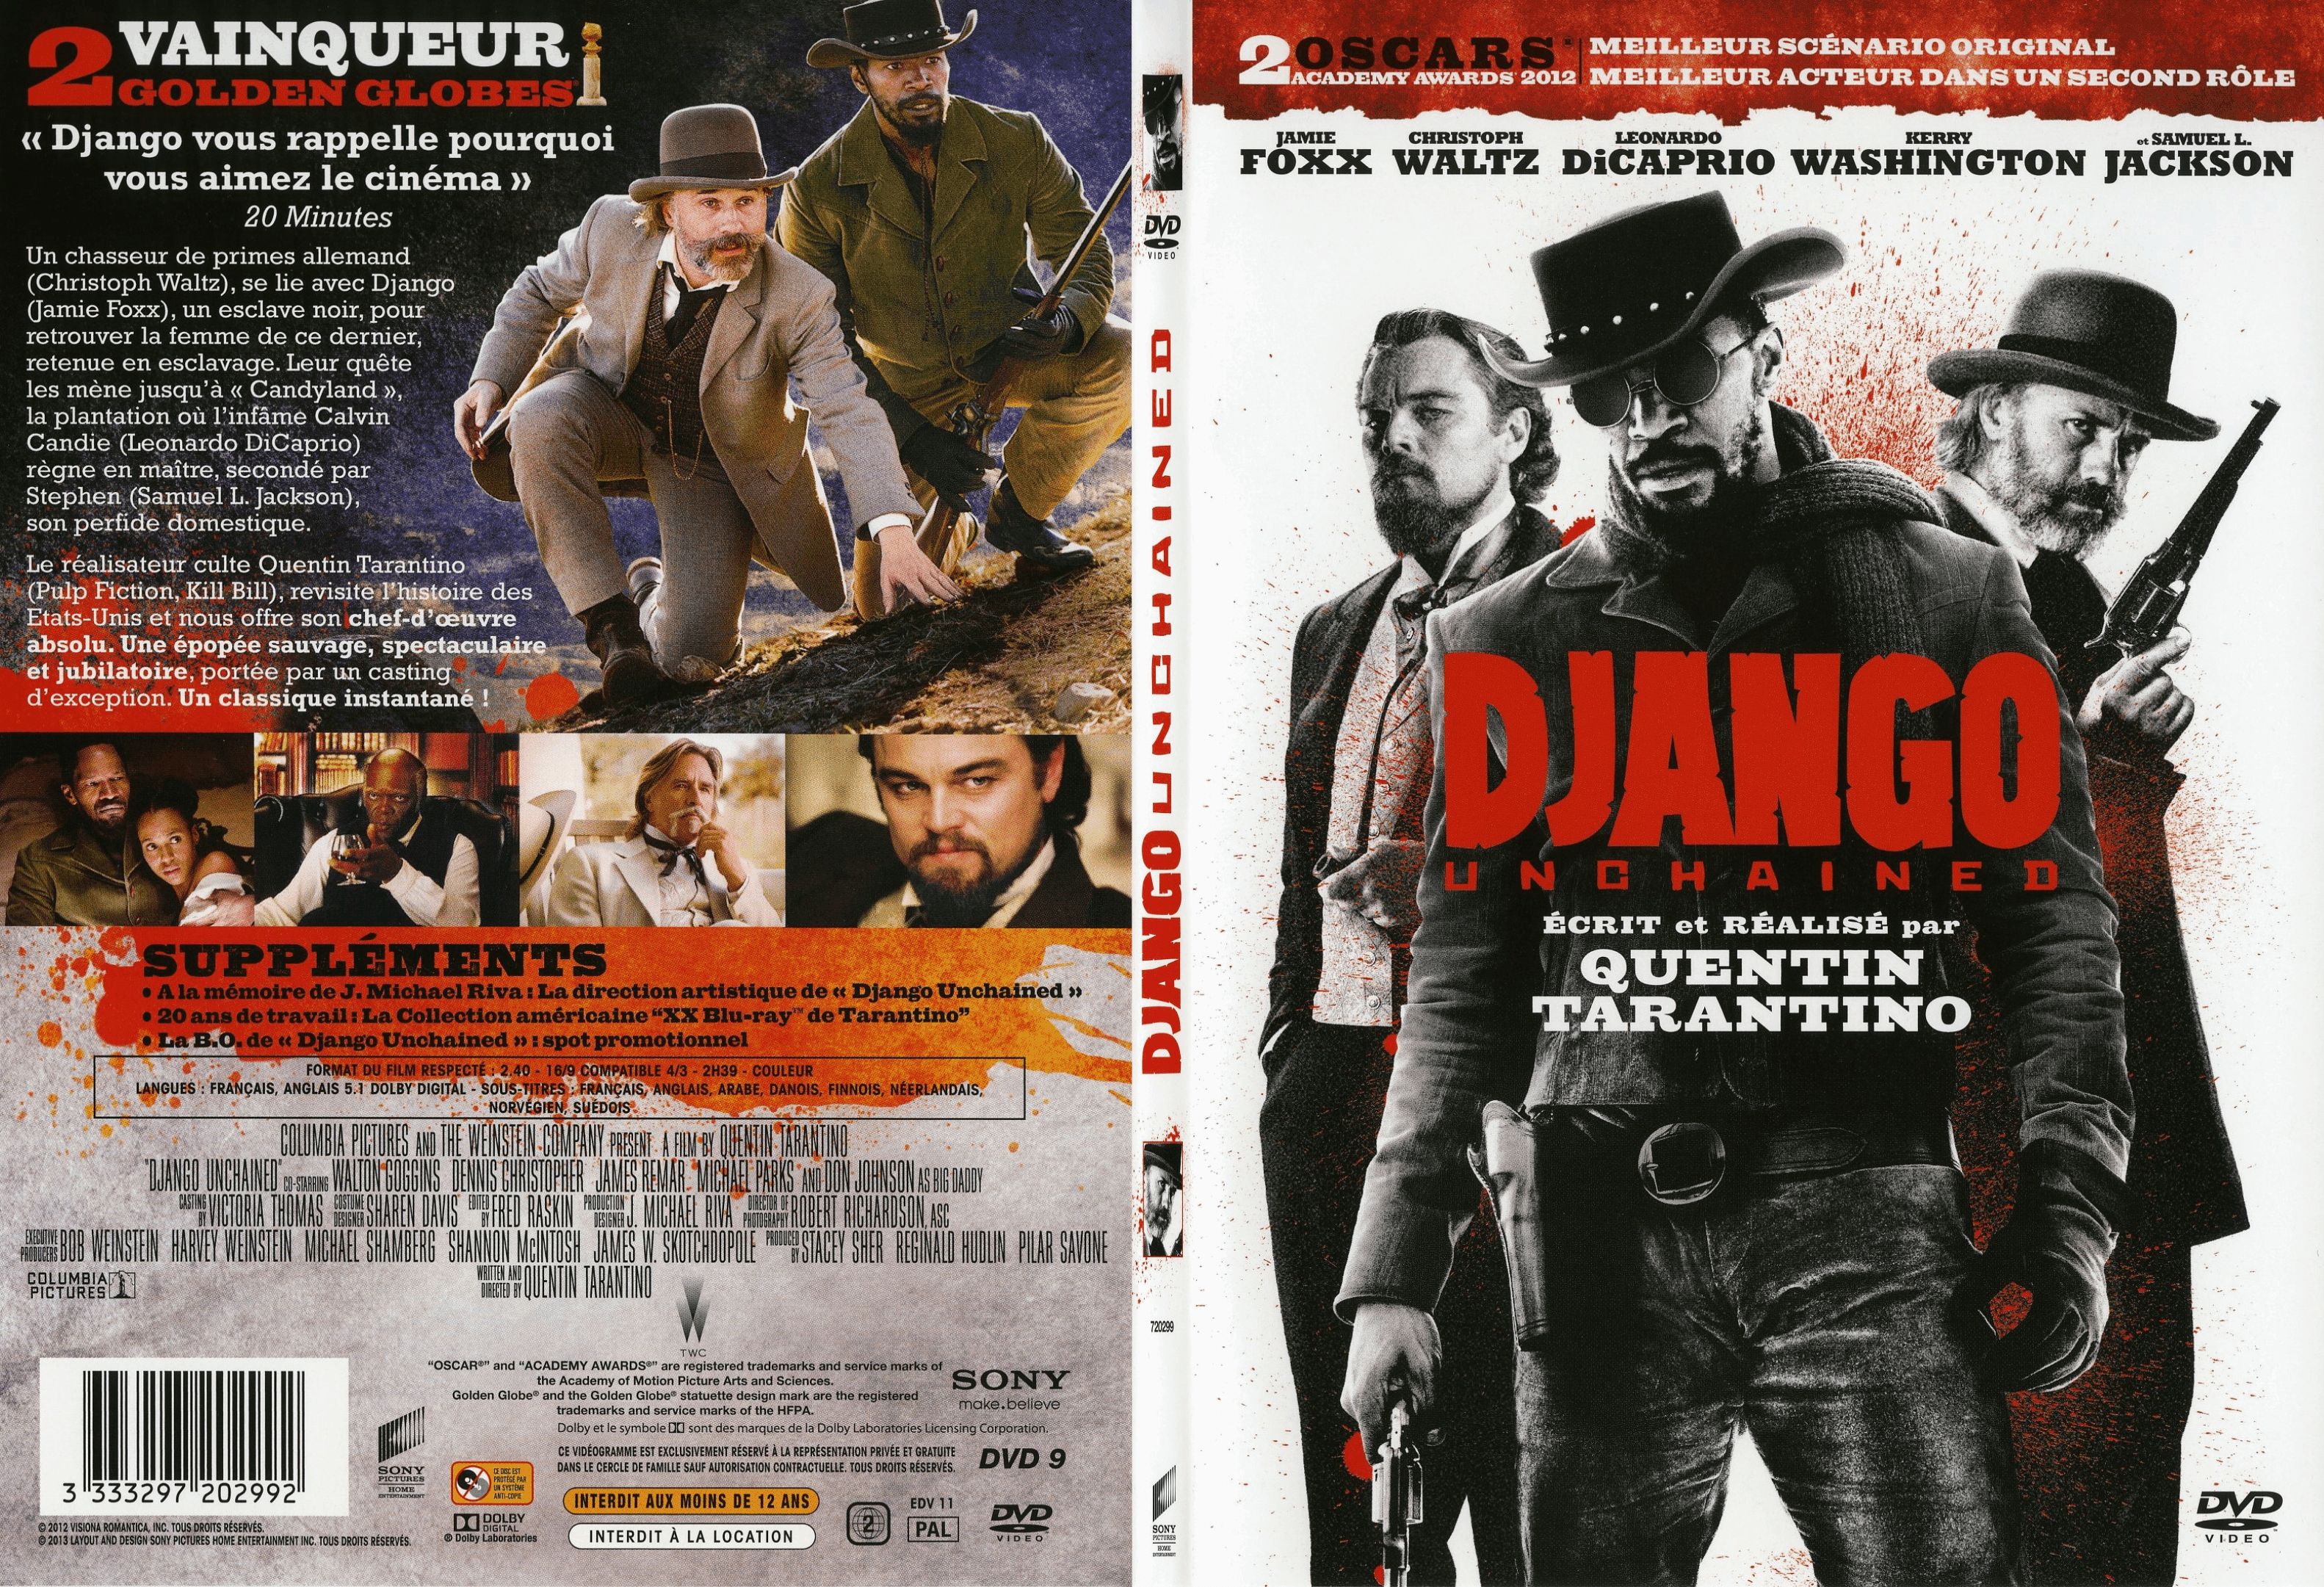 Jaquette DVD Django unchained - SLIM